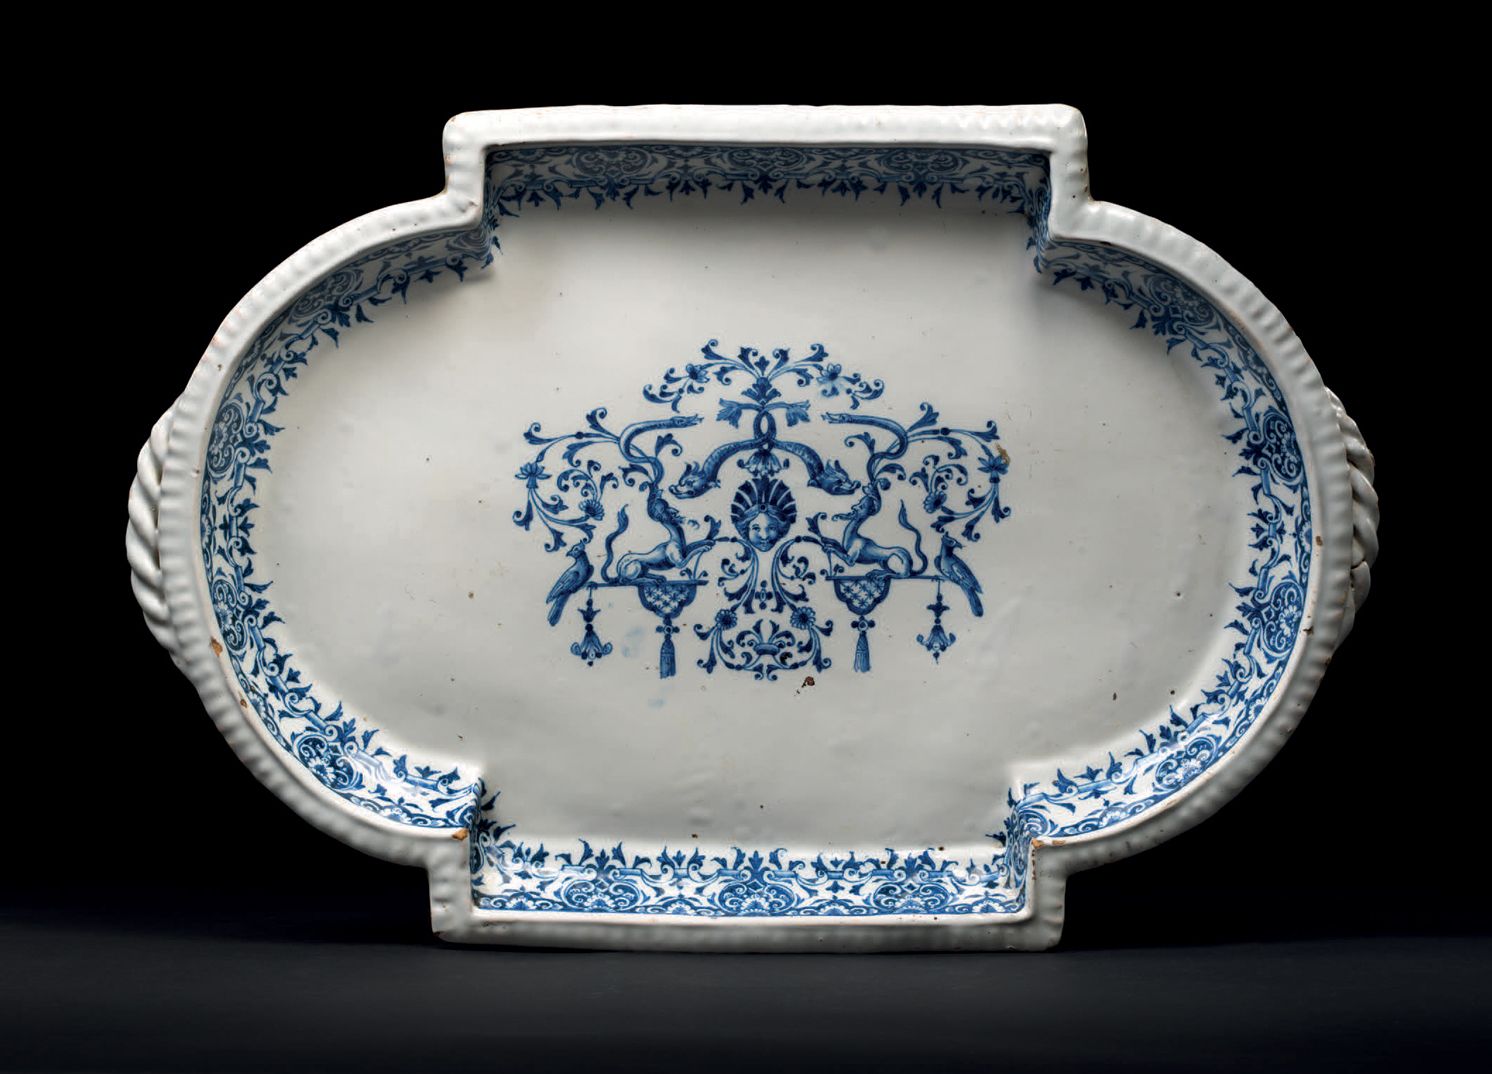 Null 大型彩绘盘 Moustiers，Clérissy工厂，约1715-1720
陶器，蓝色彩绘装饰
保存完好
35 x 51 cm
出处
巴黎私人收藏，自&hellip;